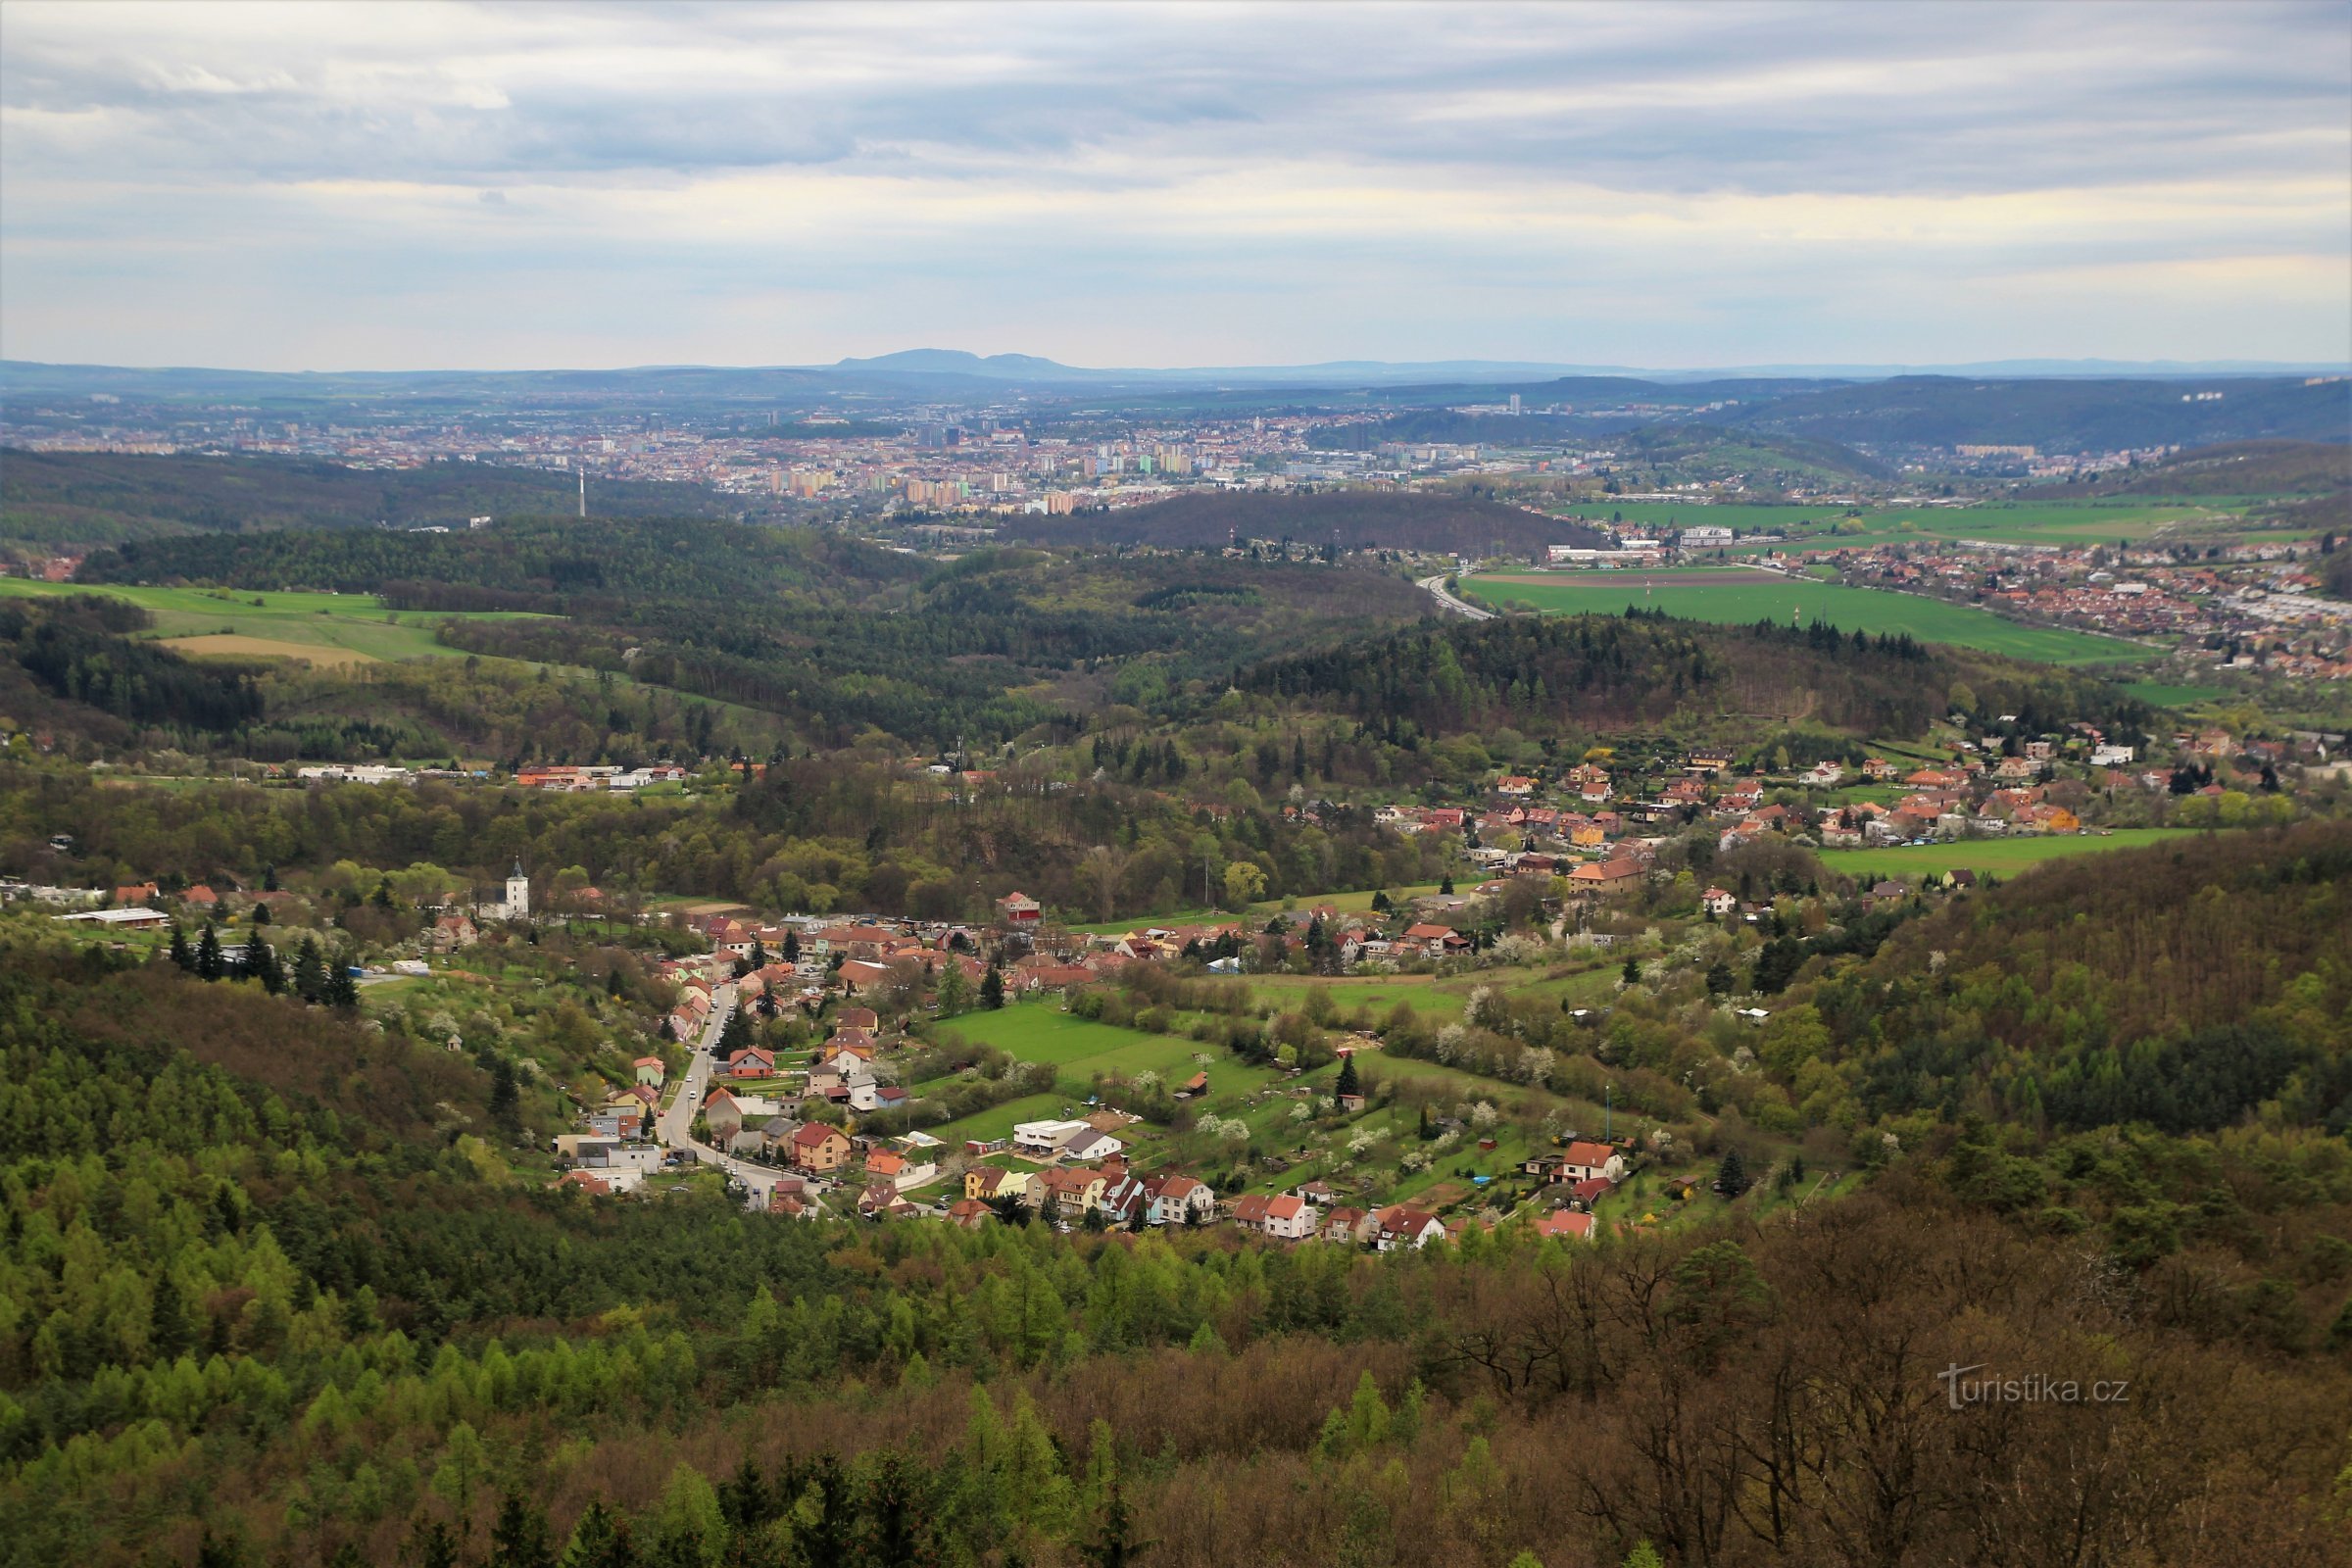 Vista para Brno, em primeiro plano está Lelekovice, ao fundo o cume de Pálava no horizonte